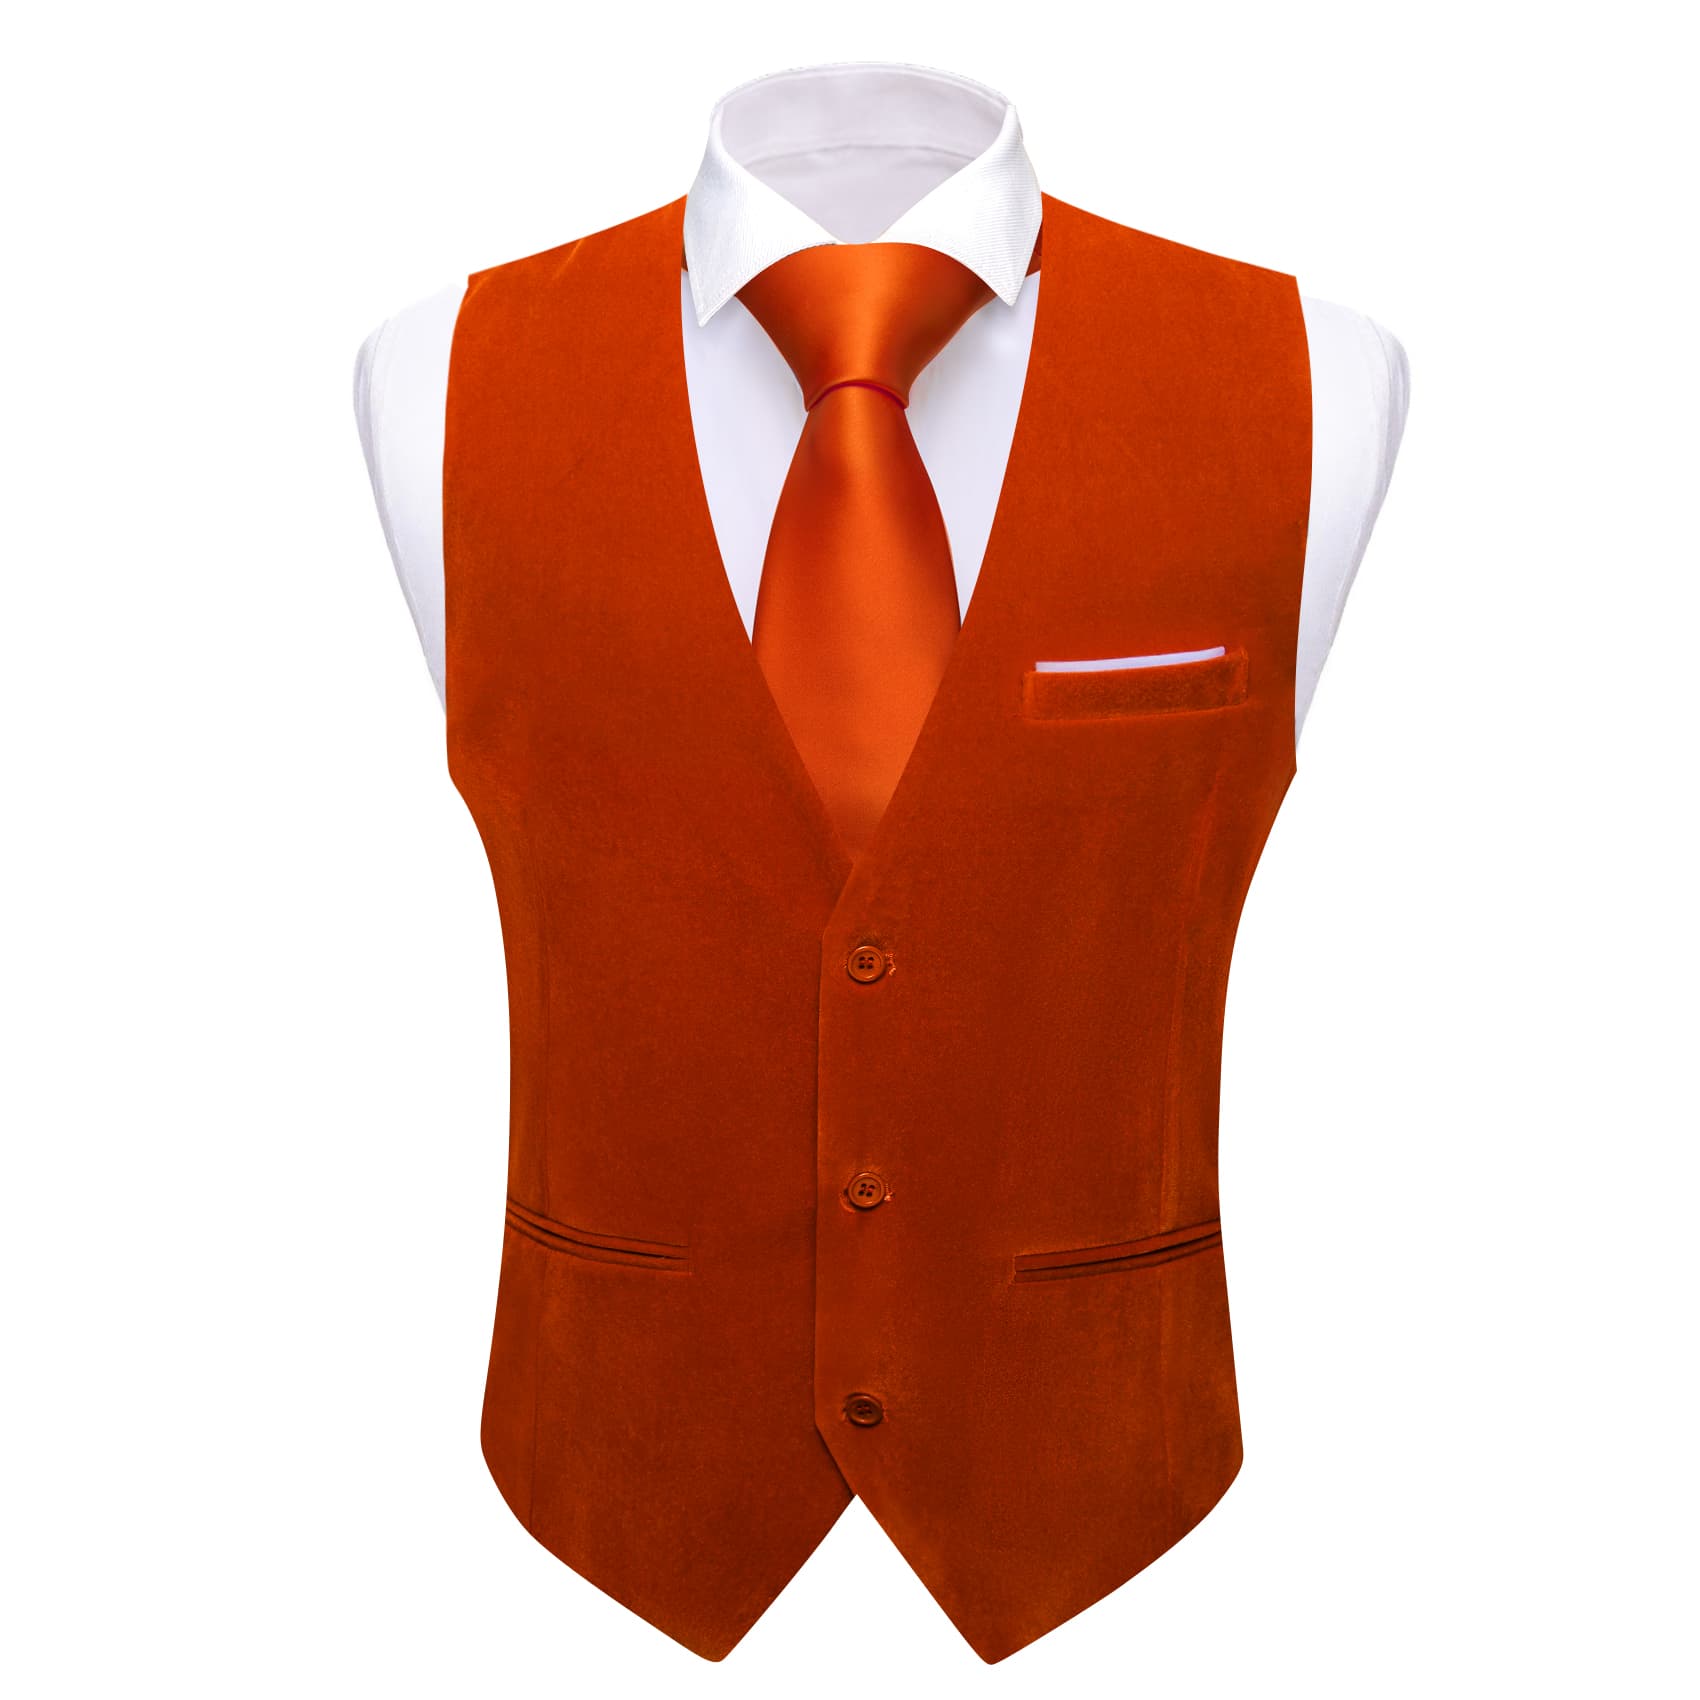 Barry Wang Waistcoat for Men Solid Burnt Orange Velvet Vest